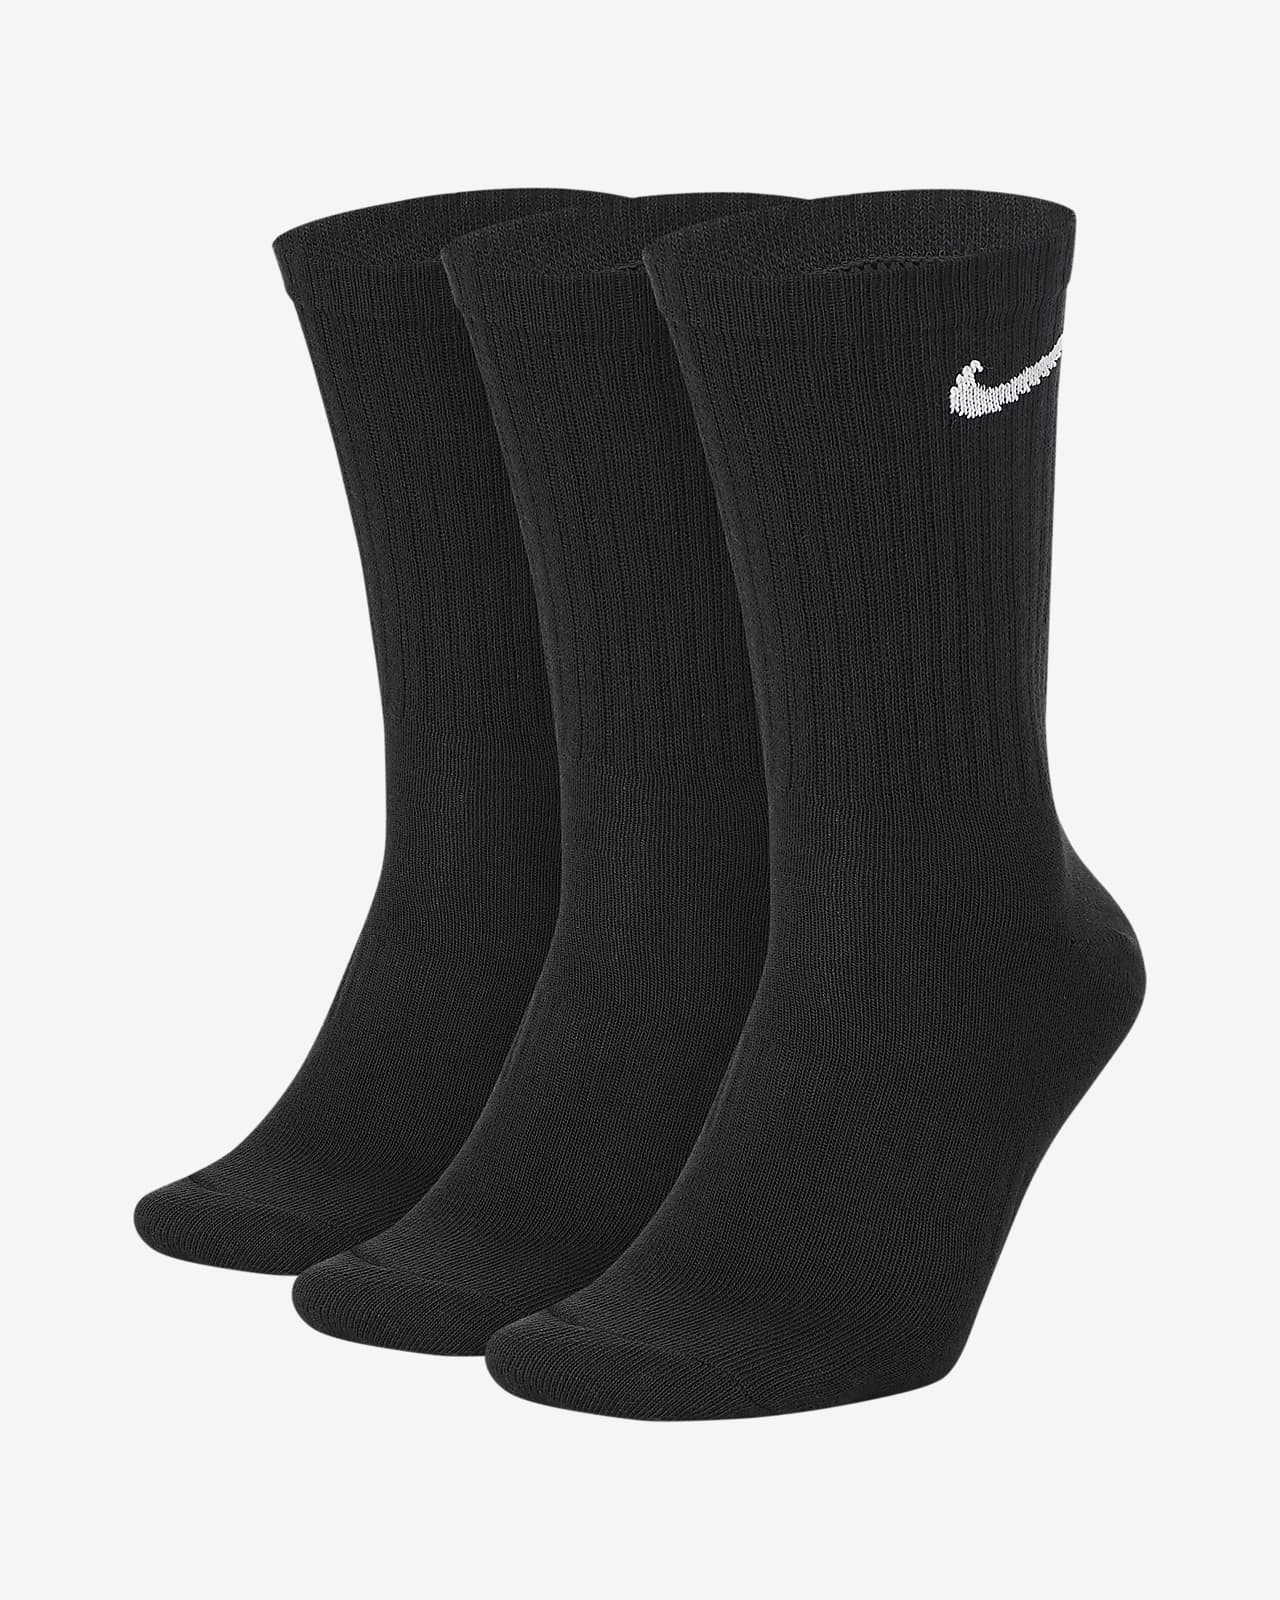 ถุงเท้าเทรนนิ่งข้อยาว Nike Everyday Lightweight (3 คู่)